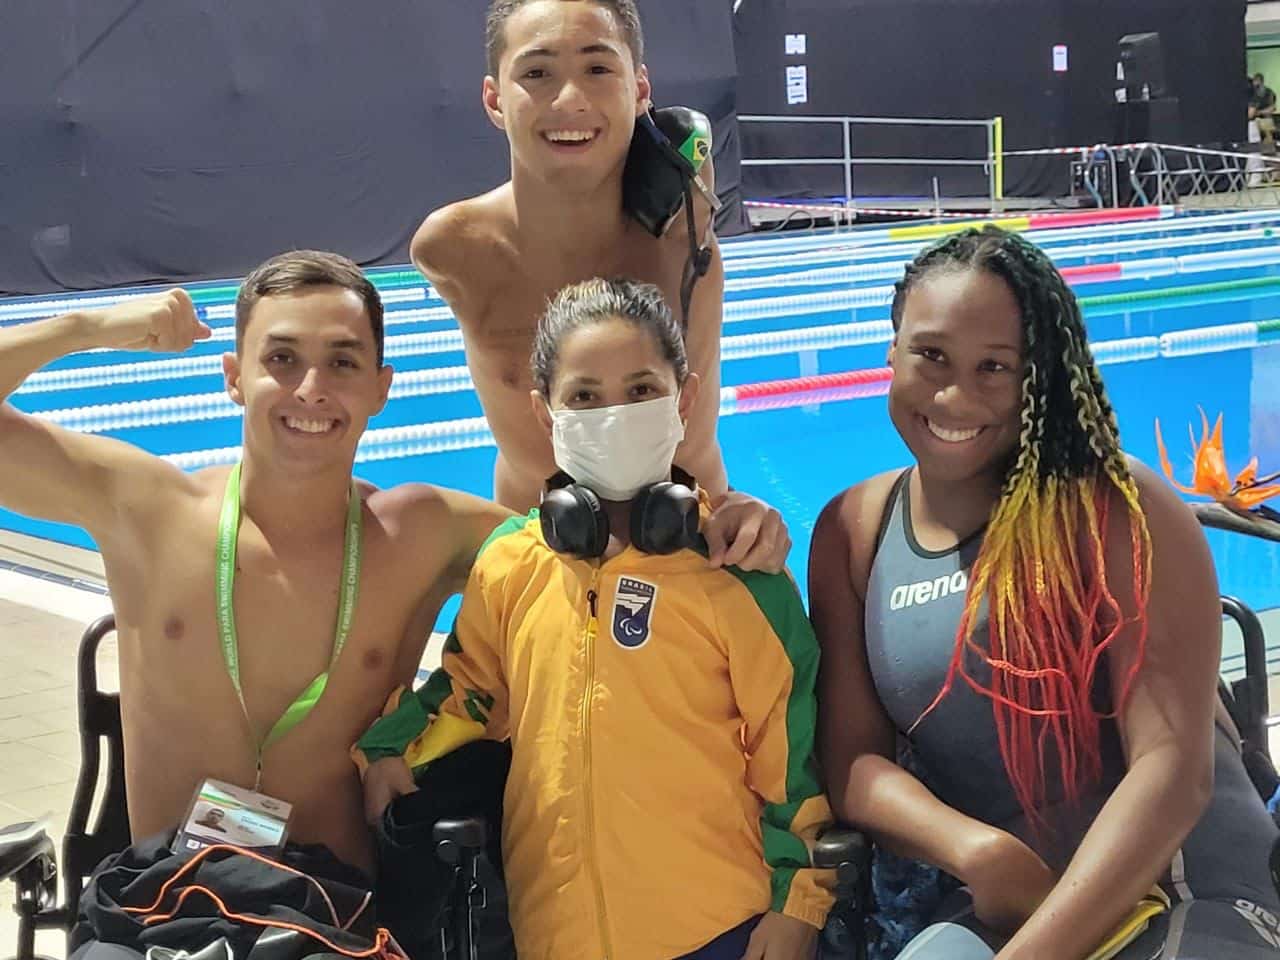 Daniel Mendes, Samuel de Oliveira, Joana Neves e Lidia Cruz, revezamento do Brasil no Mundial de natação paralímpica